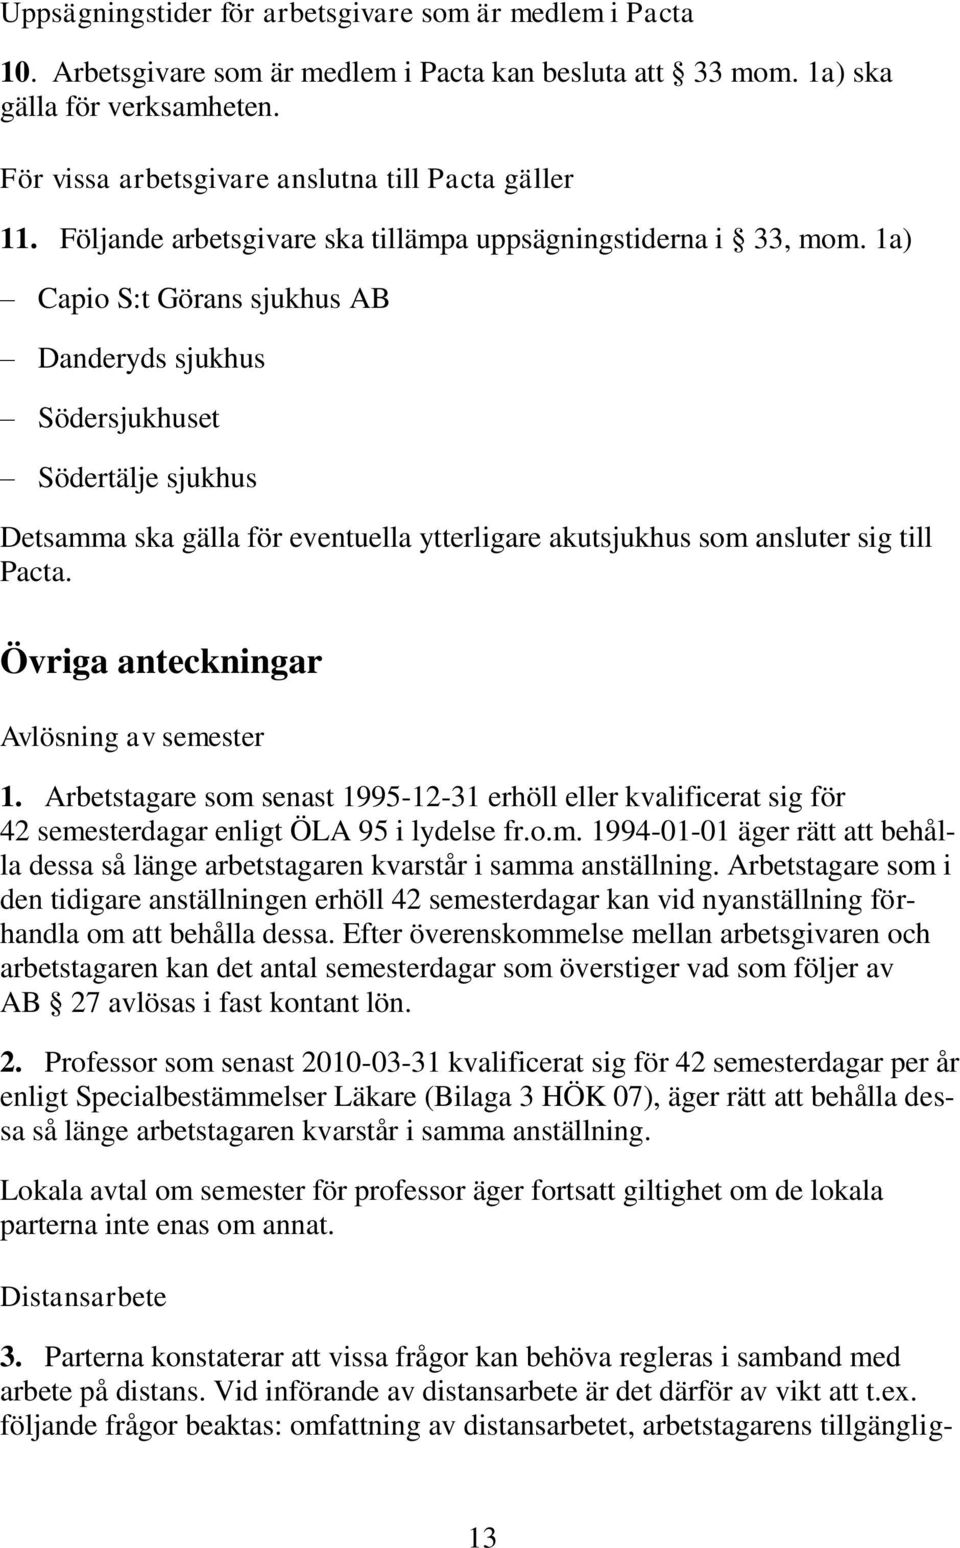 1a) Capio S:t Görans sjukhus AB Danderyds sjukhus Södersjukhuset Södertälje sjukhus Detsamma ska gälla för eventuella ytterligare akutsjukhus som ansluter sig till Pacta.